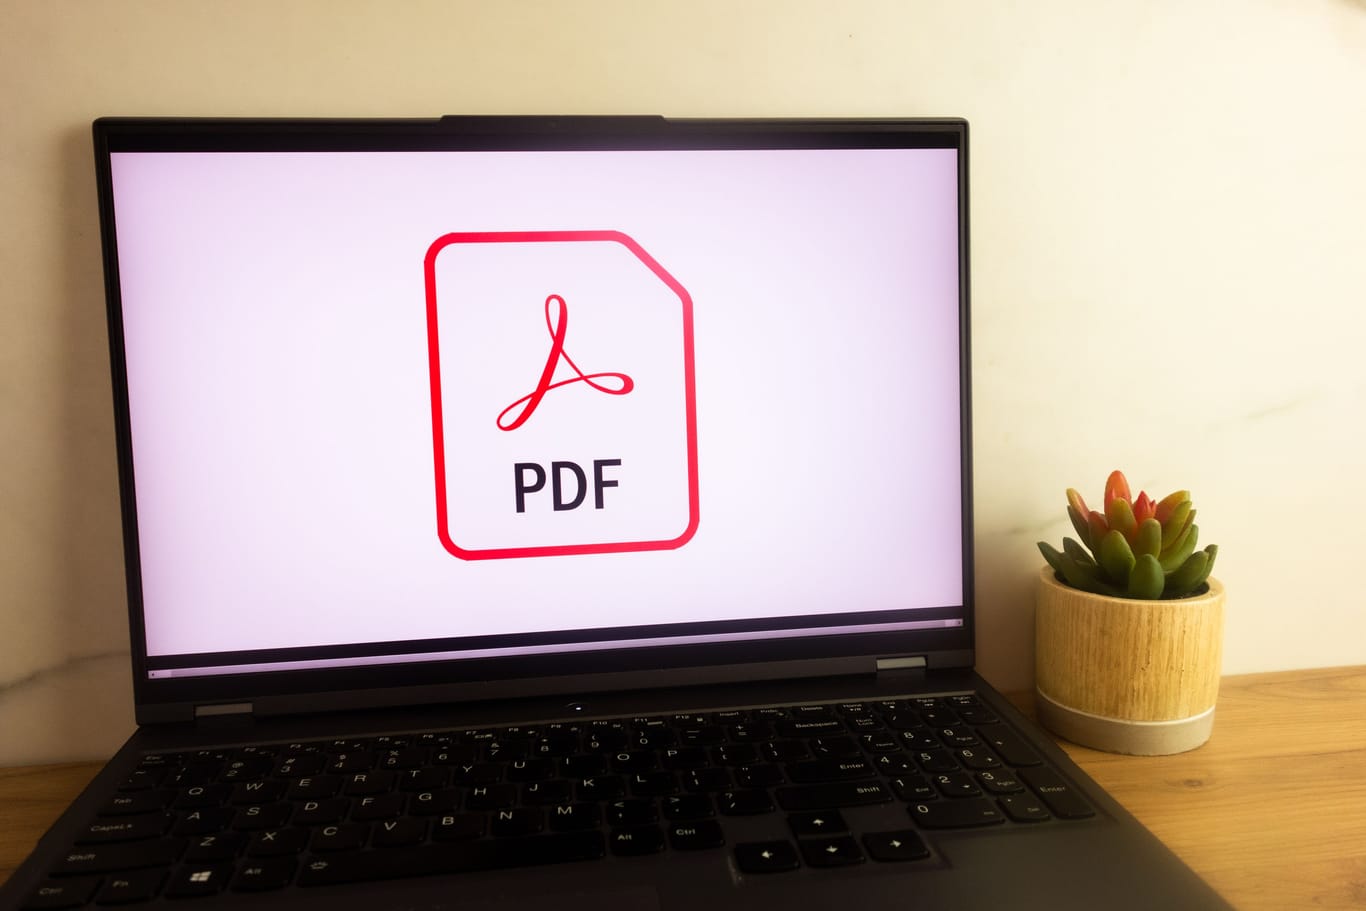 KONSKIE, POLAND - June 30, 2022: Pdf file logo displayed on laptop computer